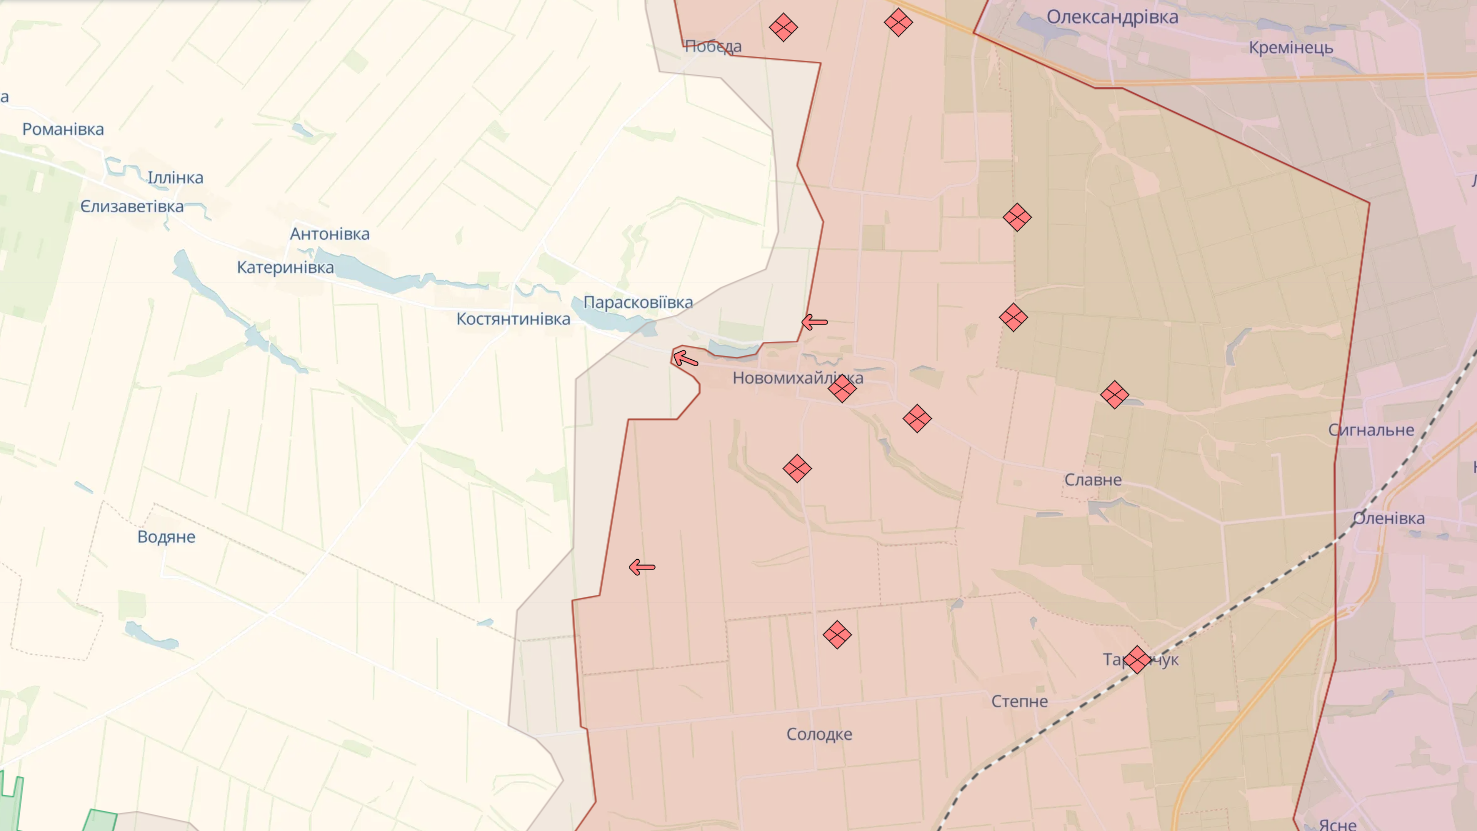 Defense Forces have withdrawn from Berdychi, Semenivka and Novomykhailivka in Donetsk region. Map